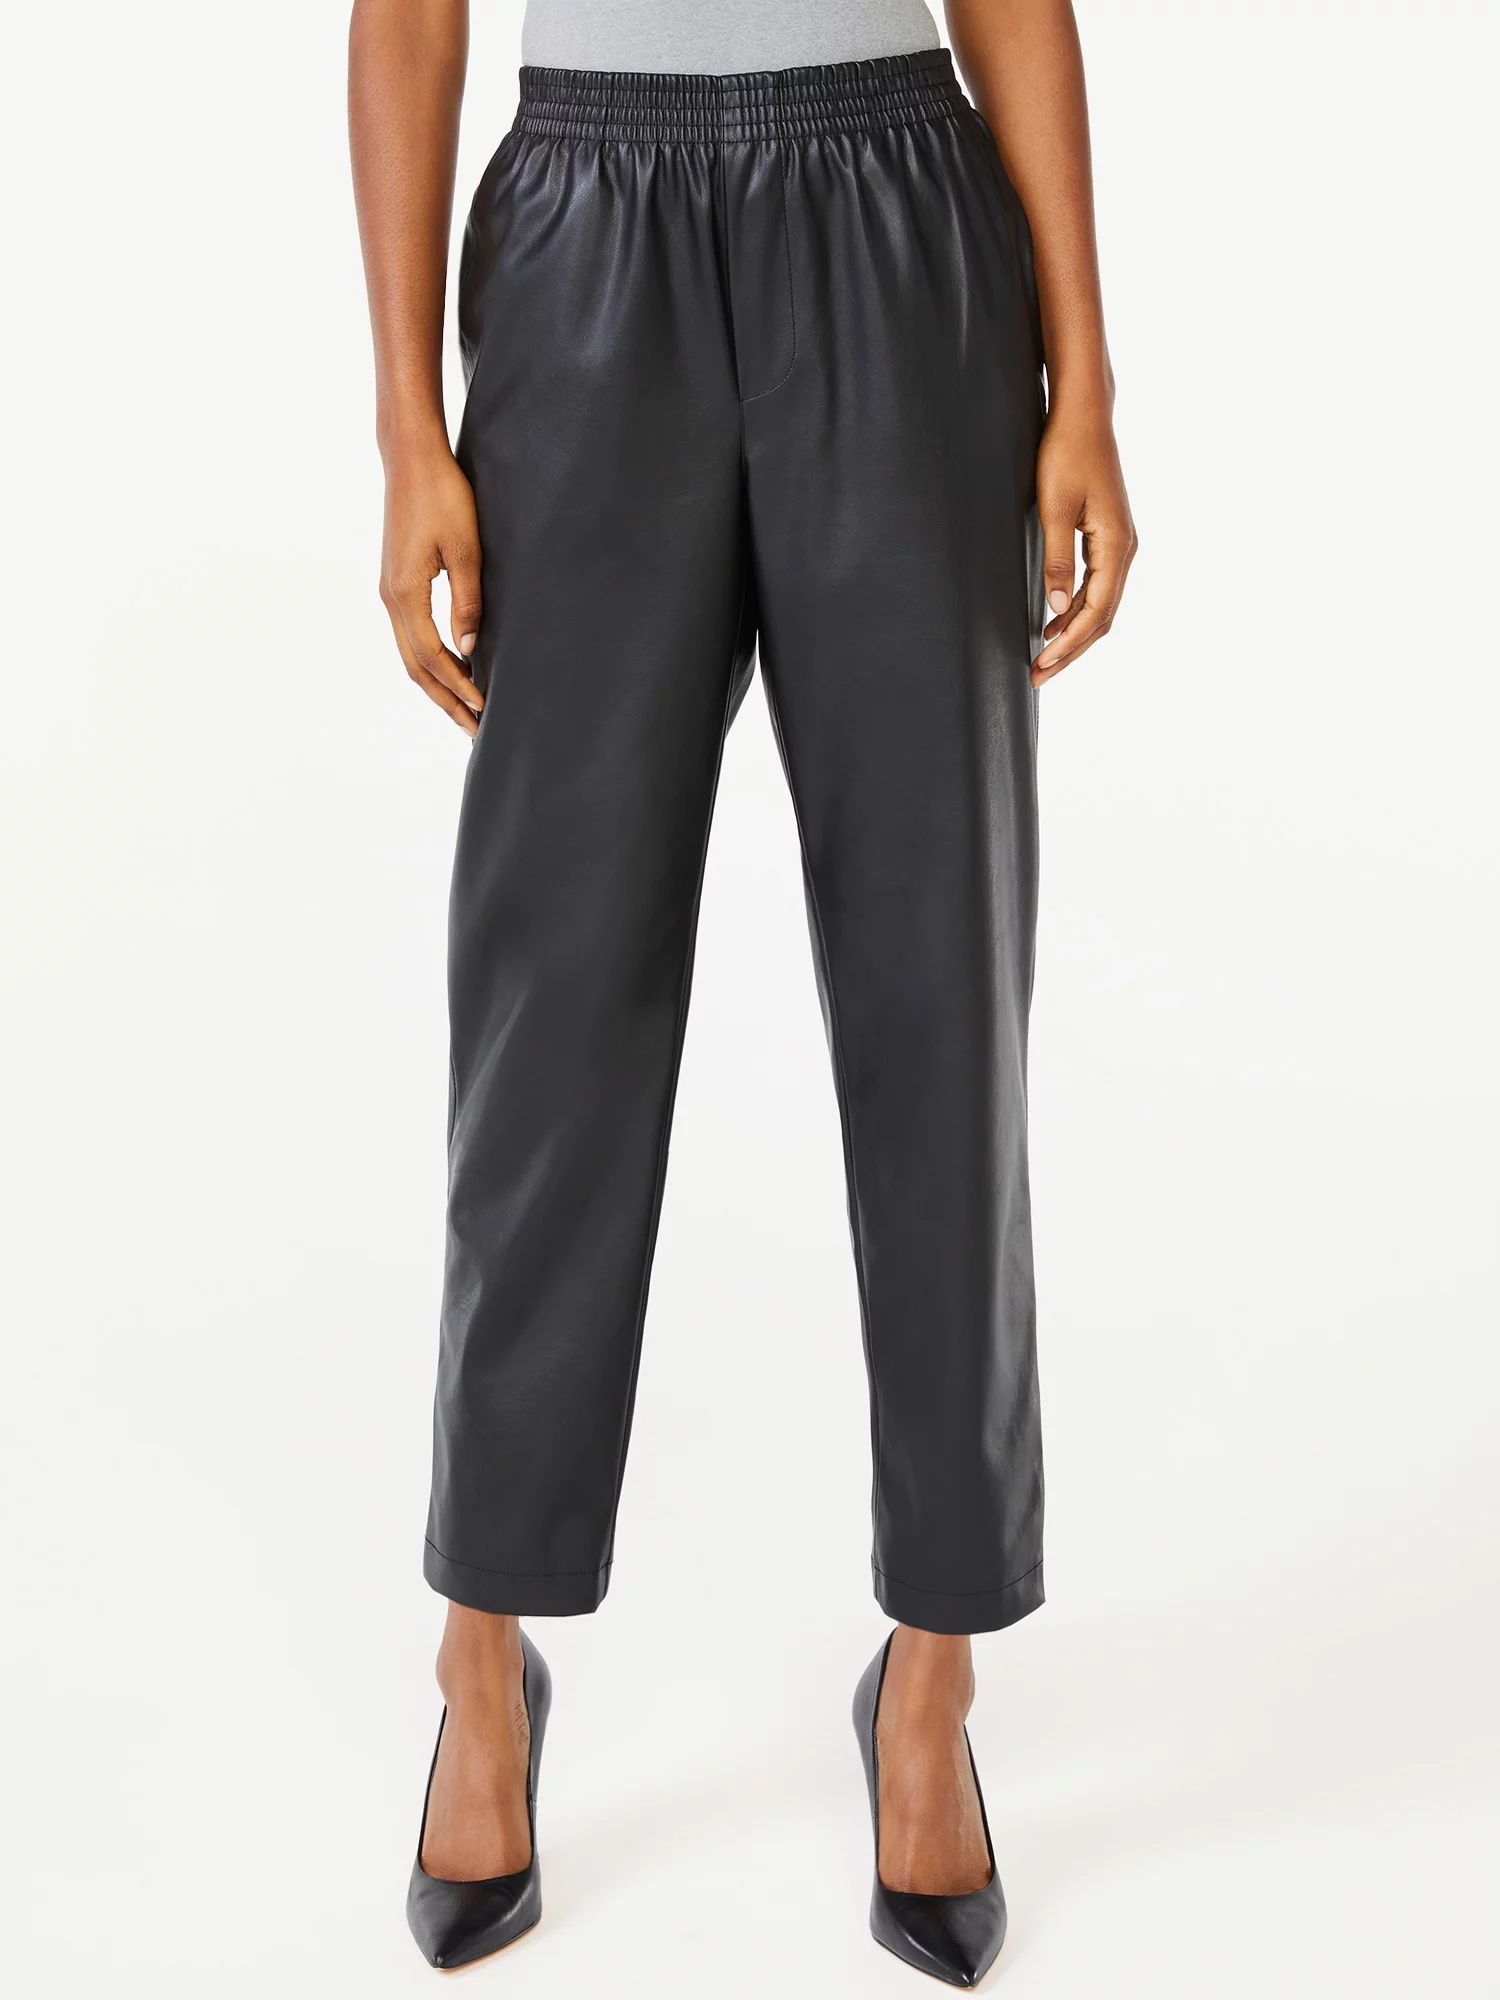 Scoop Women’s Faux Leather Pull-On Pants - Walmart.com | Walmart (US)